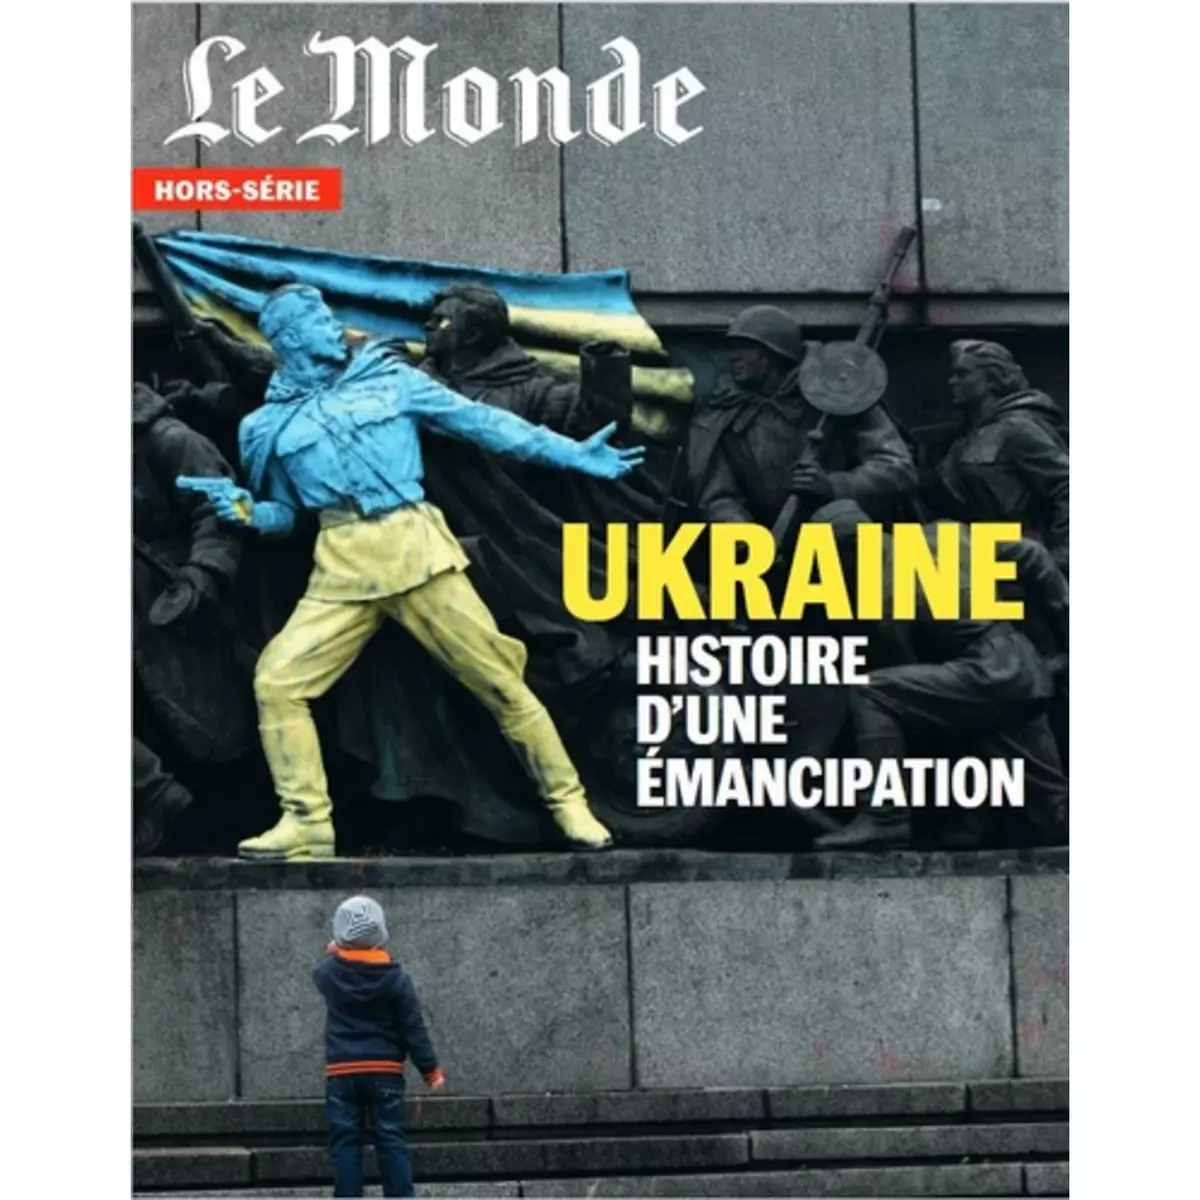  LE MONDE. HORS-SERIE N° 82, JUIN 2022 : UKRAINE. HISTOIRE D'UNE EMANCIPATION, Lefebvre Michel